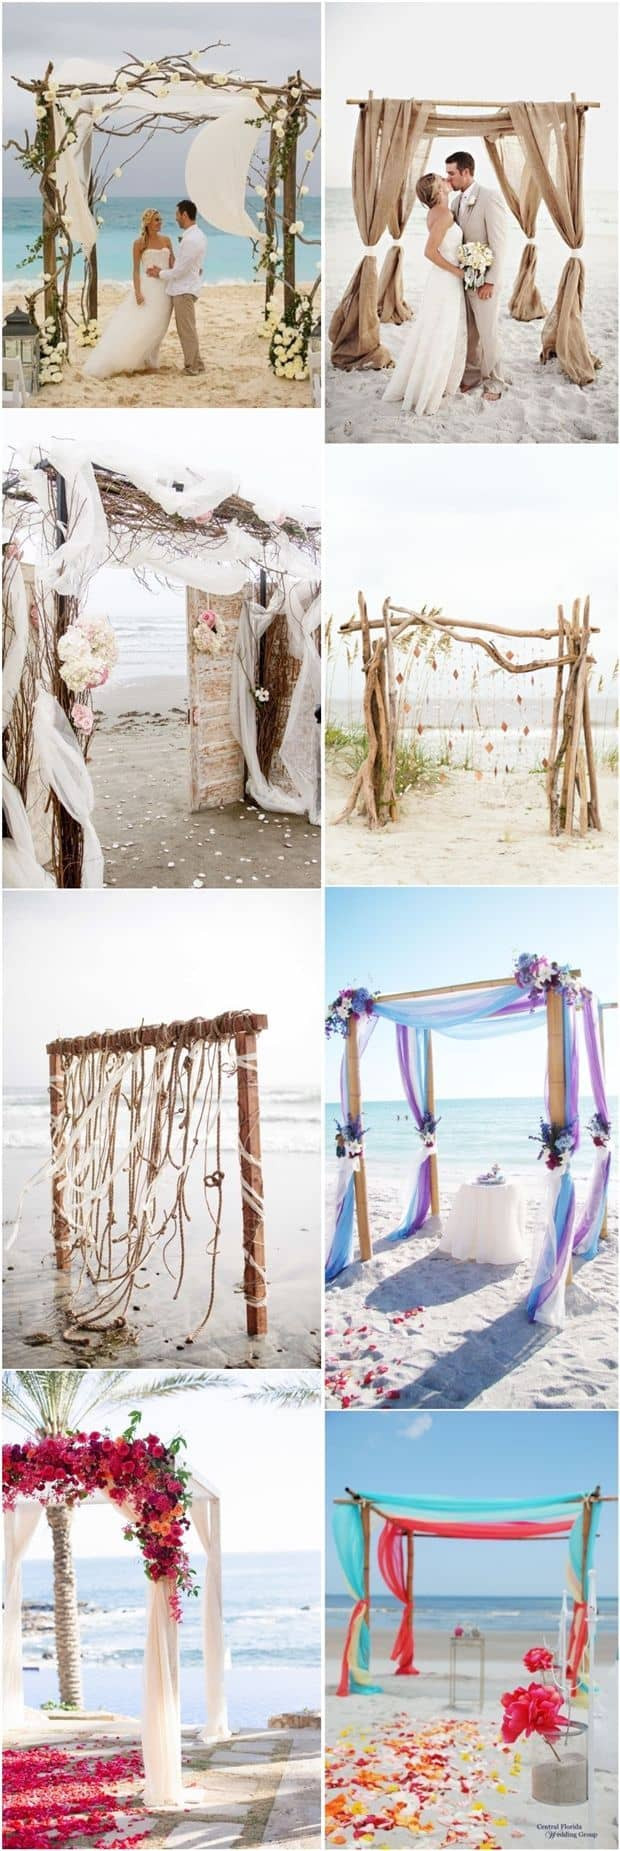 DIY Beach Wedding Ideas
 diy beach wedding best photos Cute Wedding Ideas